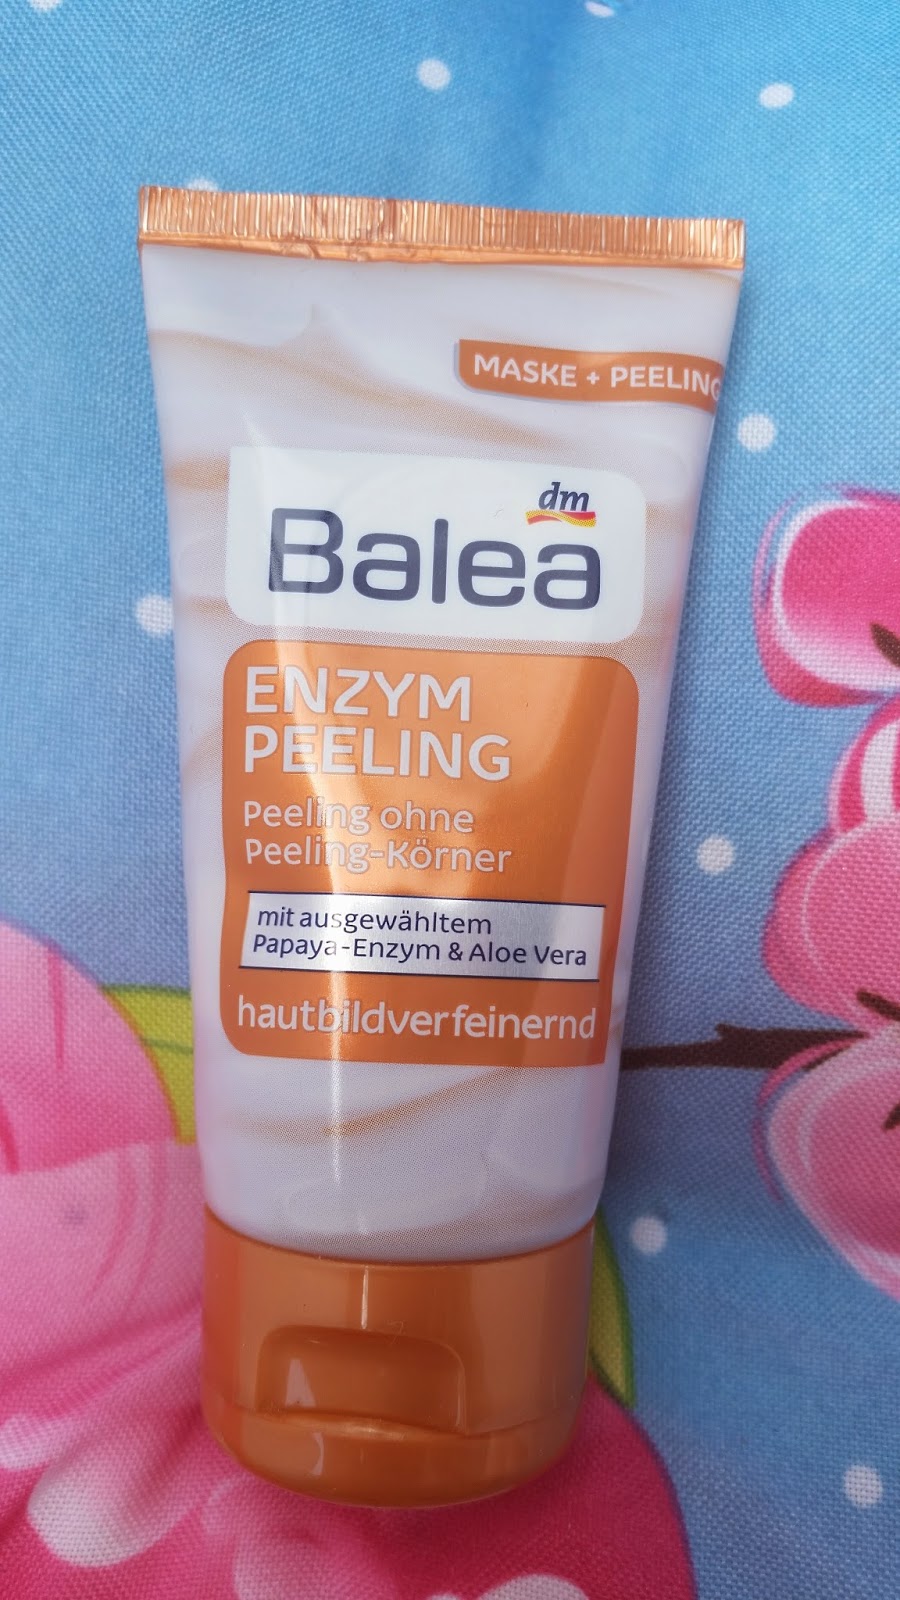 Enzym Peeling von Balea - www.annitschkasblog.de